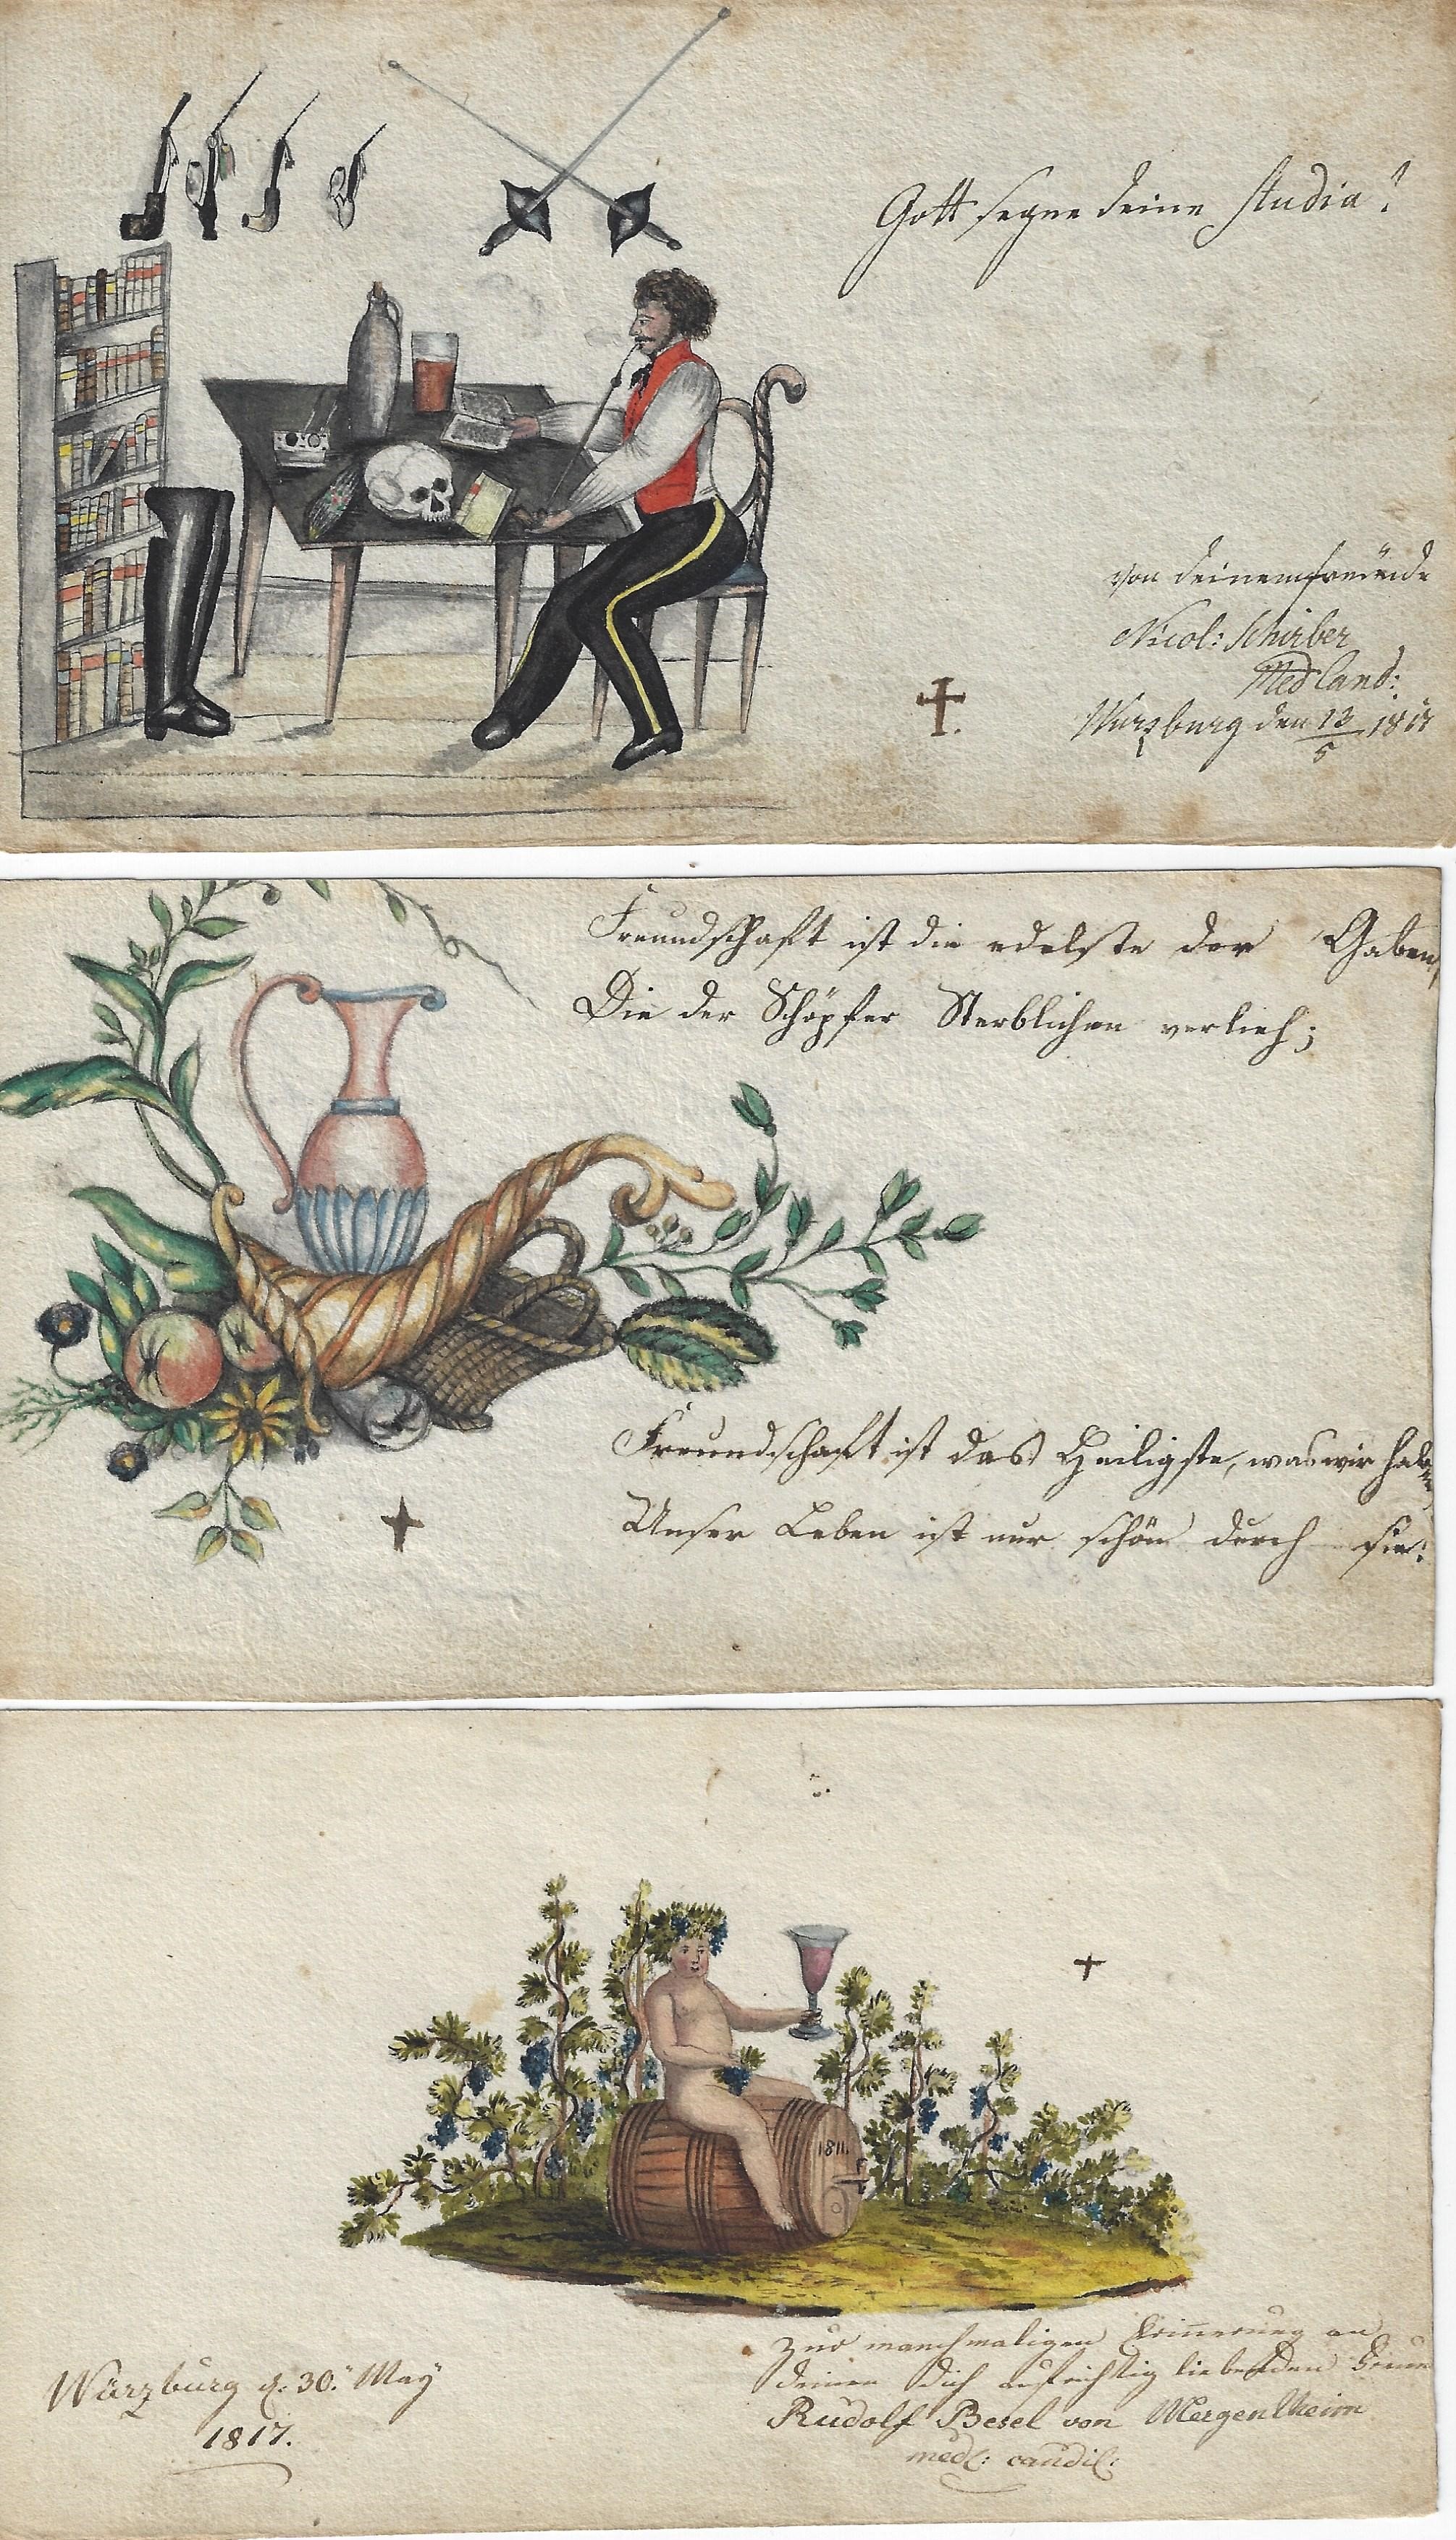 Die blichen Stammbuchbltter (von oben nach unten), datiert 1817, 1819, 1817. Siehe dazu (unten): Texte zu den Stammbuchblttern 1817-1819